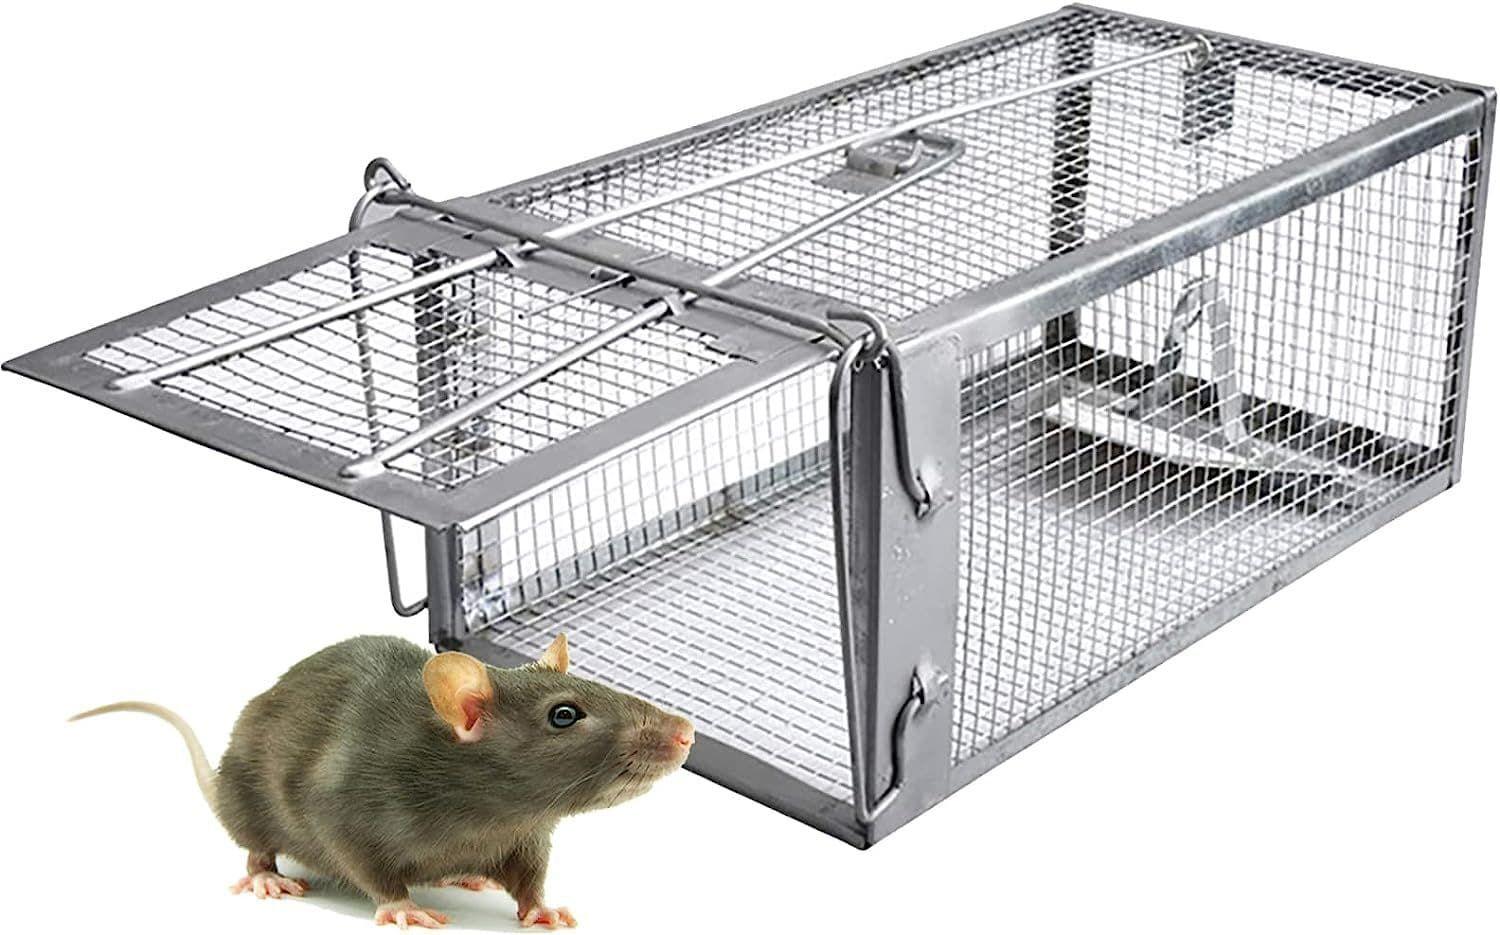 Z-C PièGe à Souris, Humain PièGes à Rat Cage Convient Aux Souris